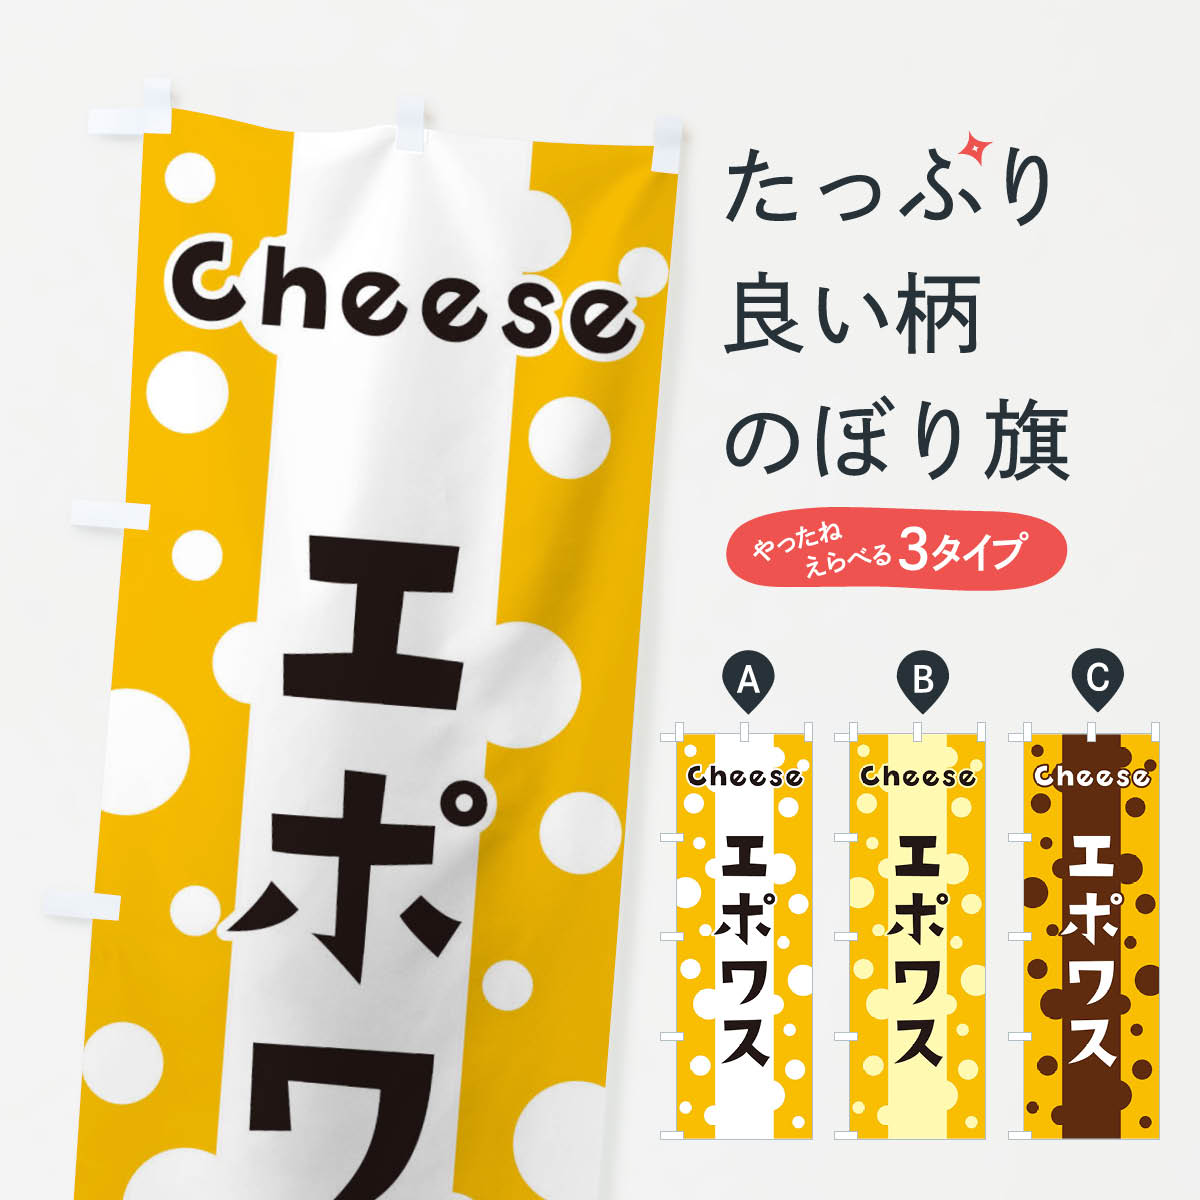 【ネコポス送料360】 のぼり旗 エポワスのぼり 3UN8 牛乳・乳製品